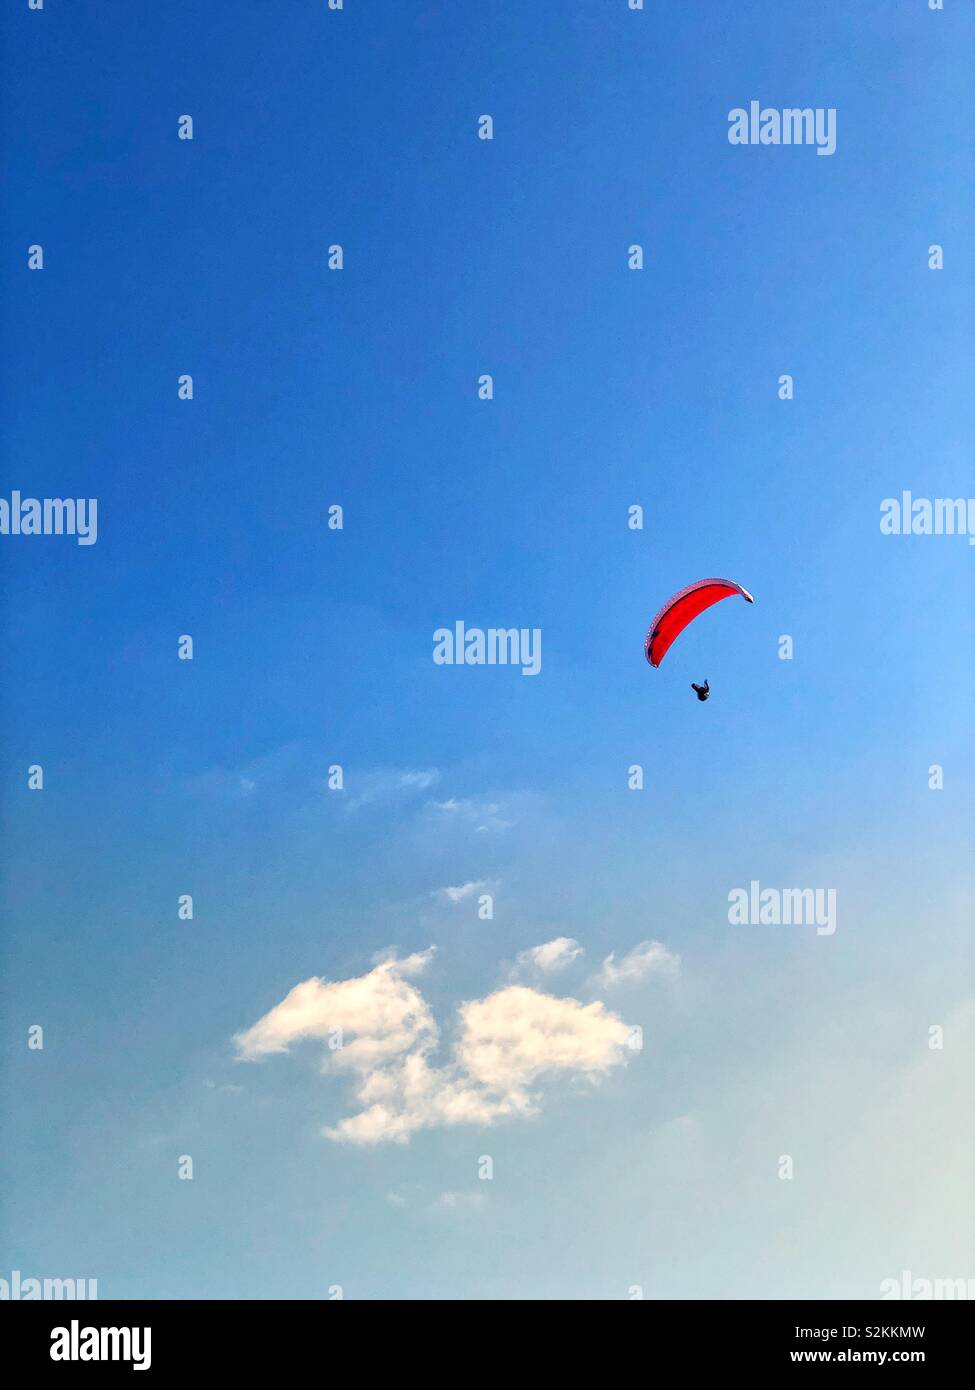 Parapendio con baldacchino rosso passando sopra una nuvola Foto Stock